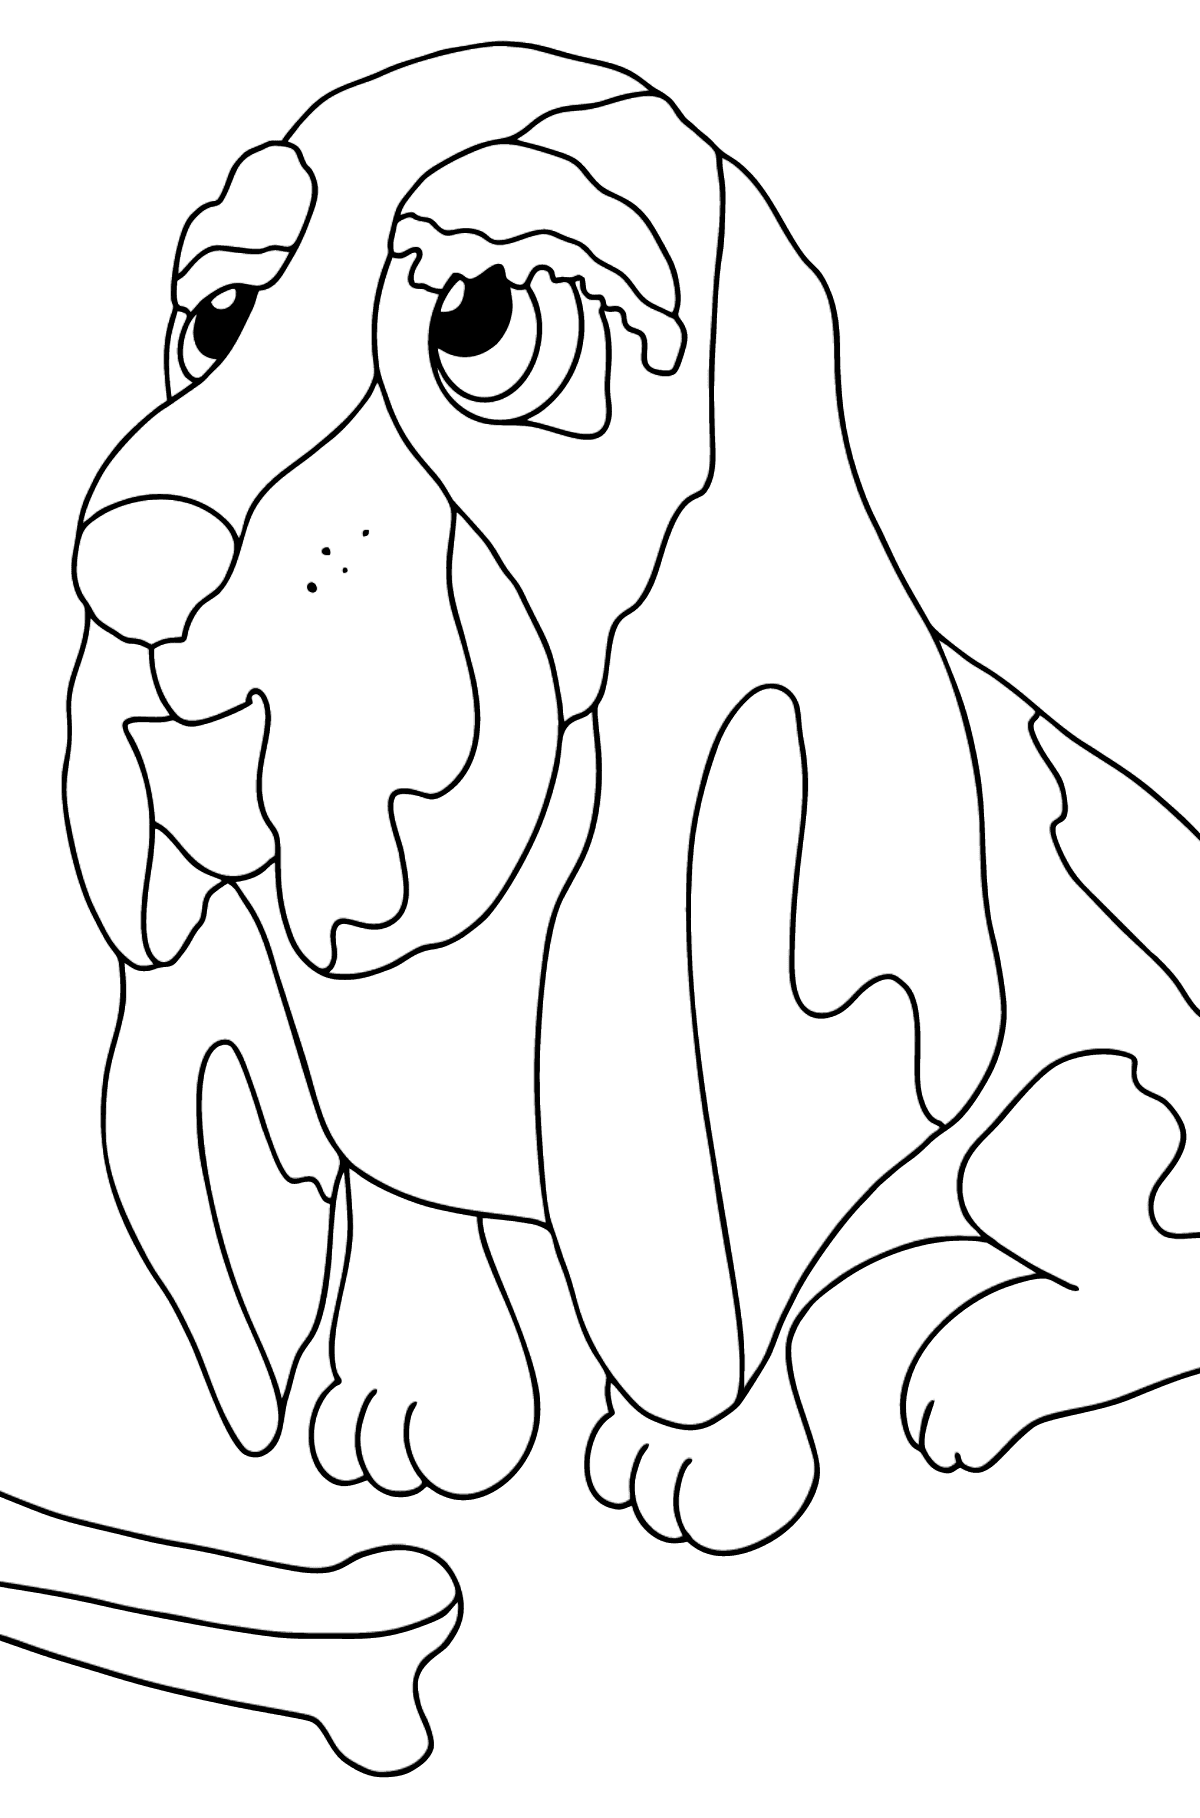 Dibujo para Colorear - Un Perro con un Hueso - Dibujos para Colorear para Niños